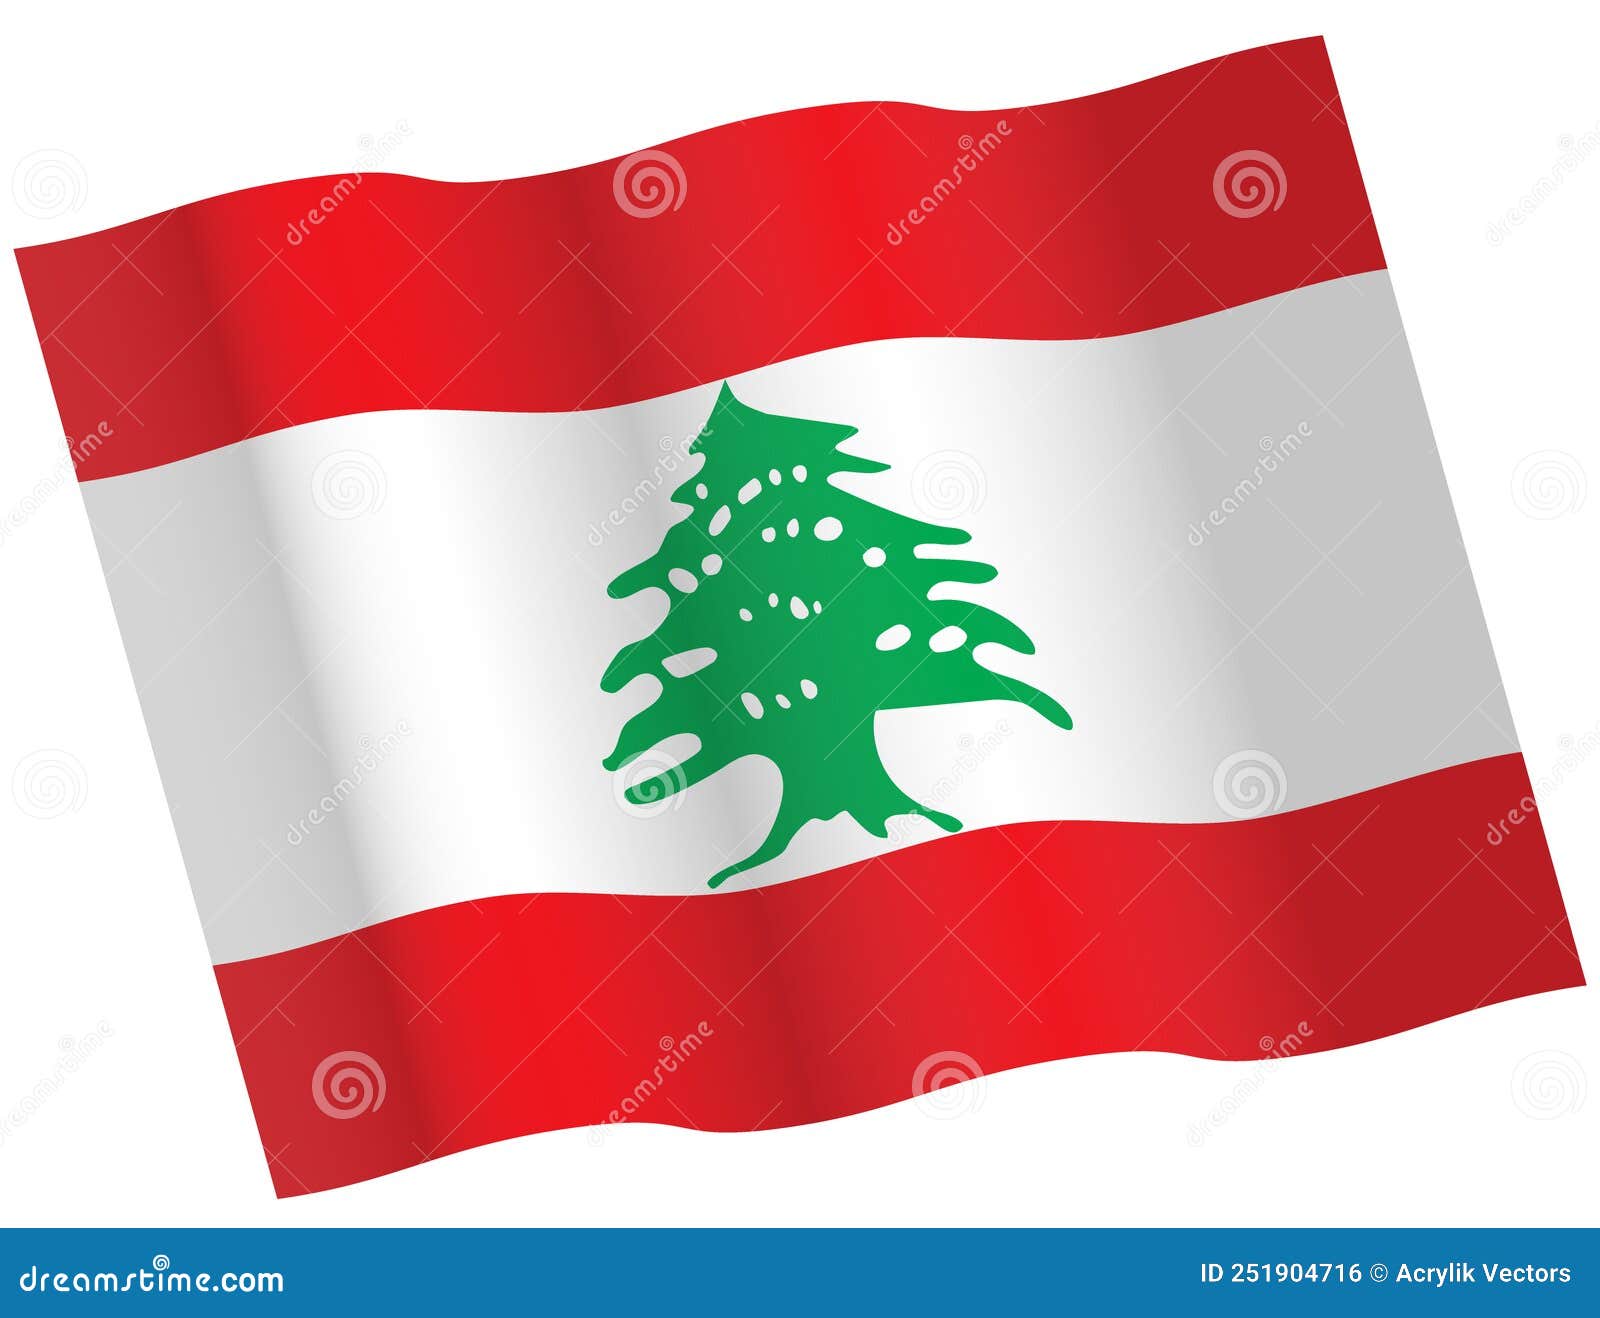 黎巴嫩国旗飘扬圖案素材 | PNG和向量圖 | 透明背景圖片 | 免費下载 - Pngtree